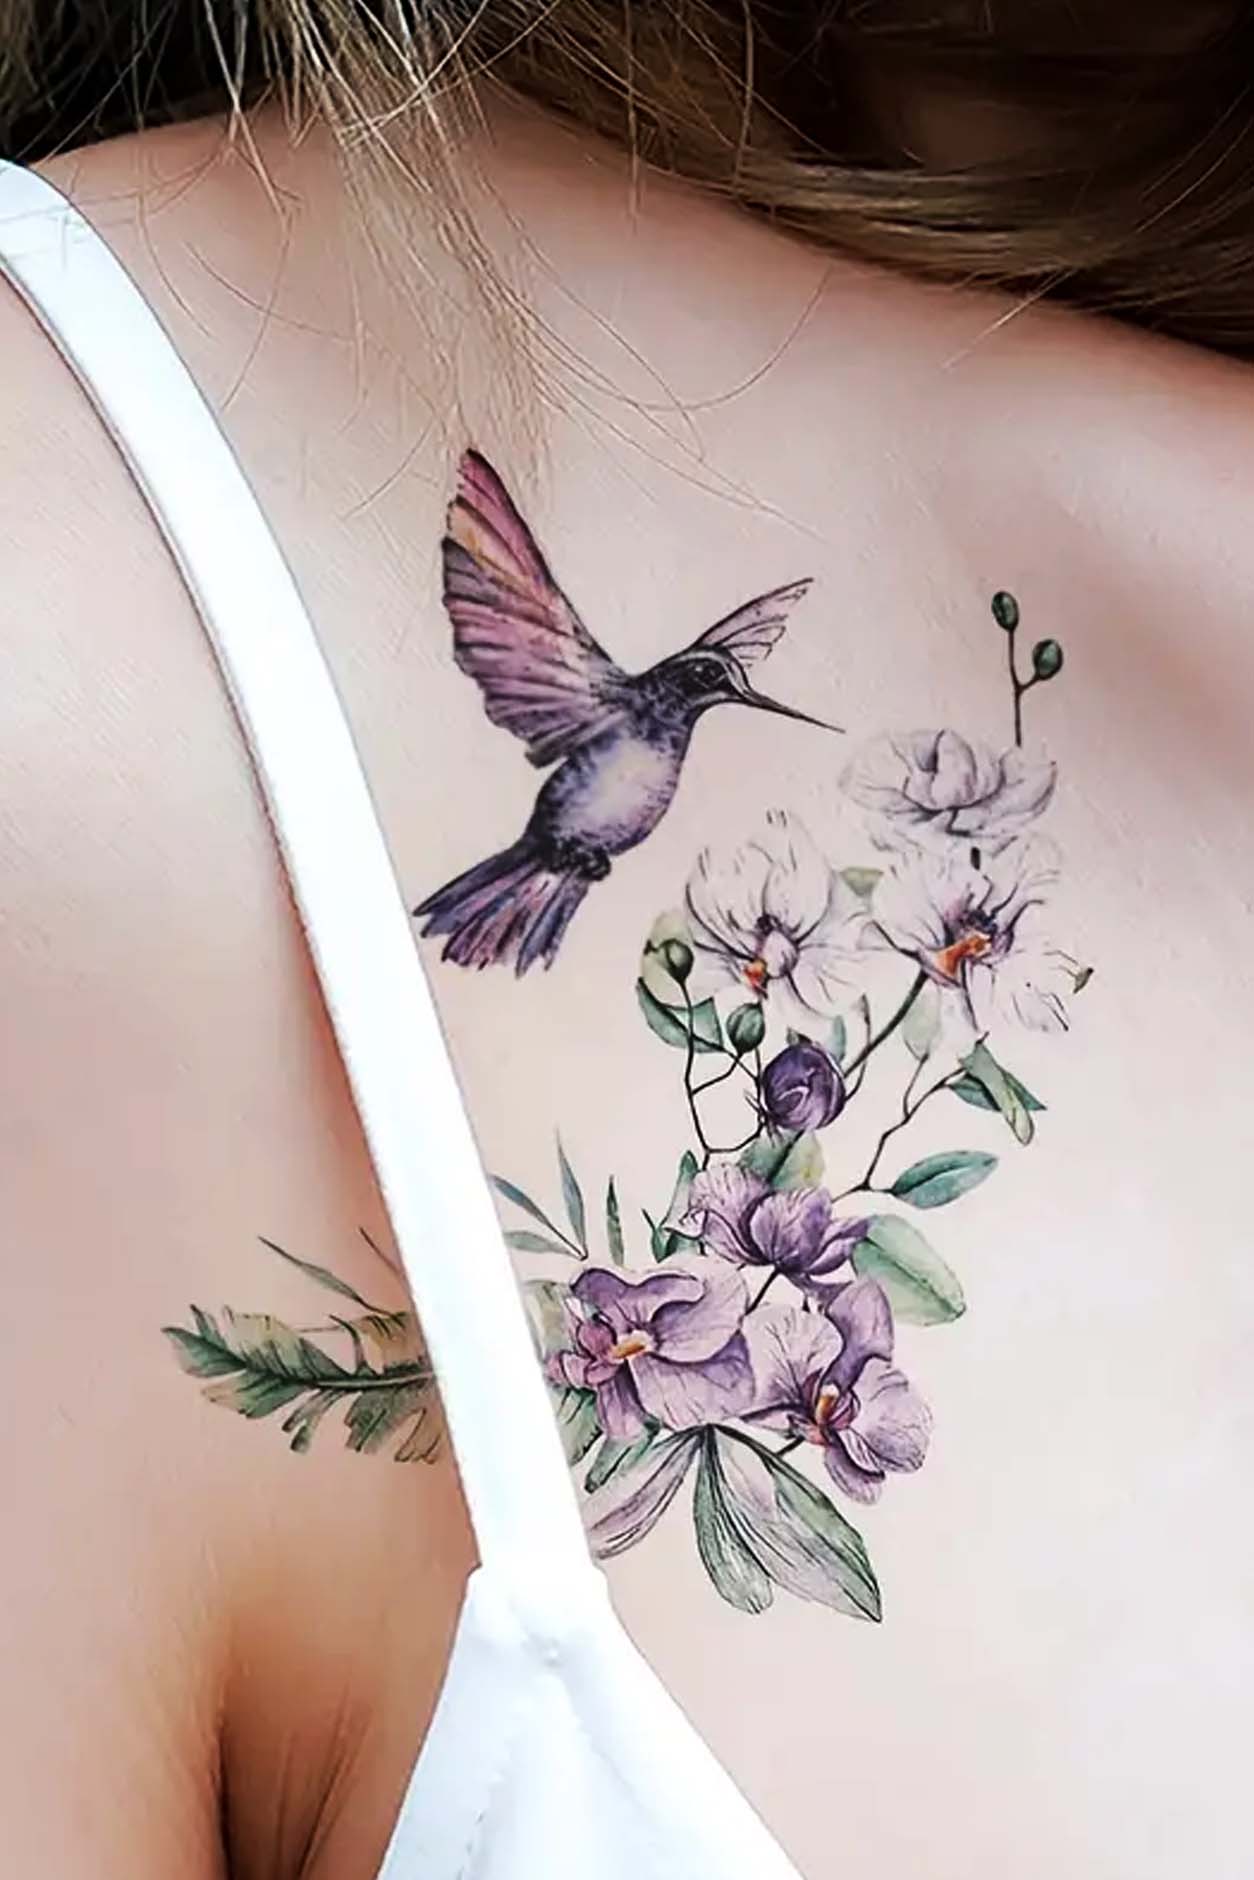 Sasha Unisex on Instagram: “Hummingbird feeding on a lavender flower 💜  #lavendertattoo #hummingbird #kolibri” | Floral tattoo, Tattoos, Flower  tattoos